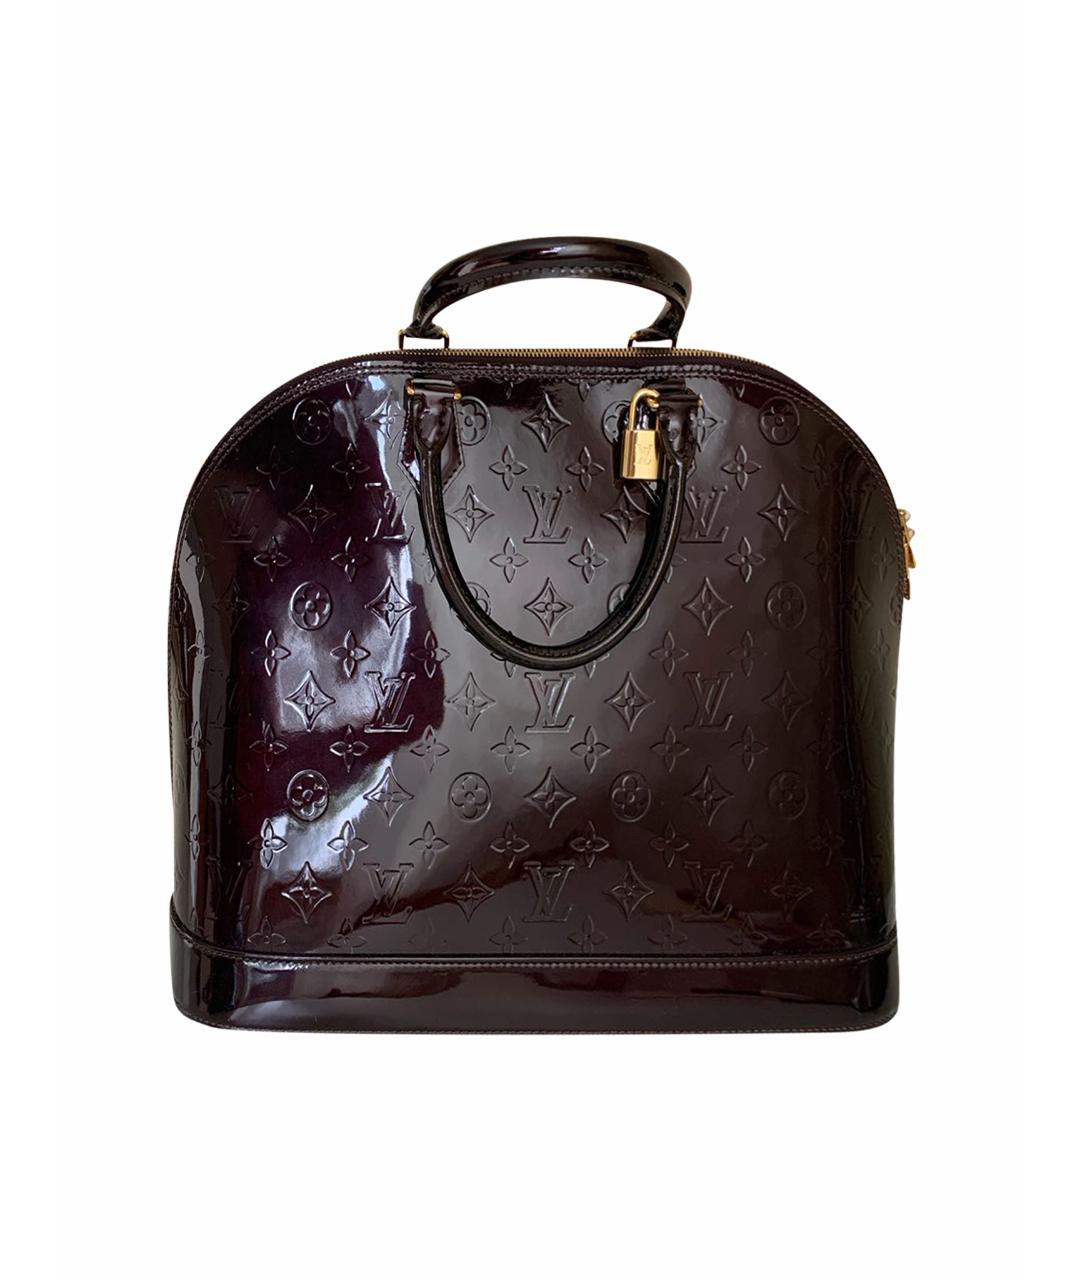 LOUIS VUITTON PRE-OWNED Бордовая сумка с короткими ручками из лакированной кожи, фото 1